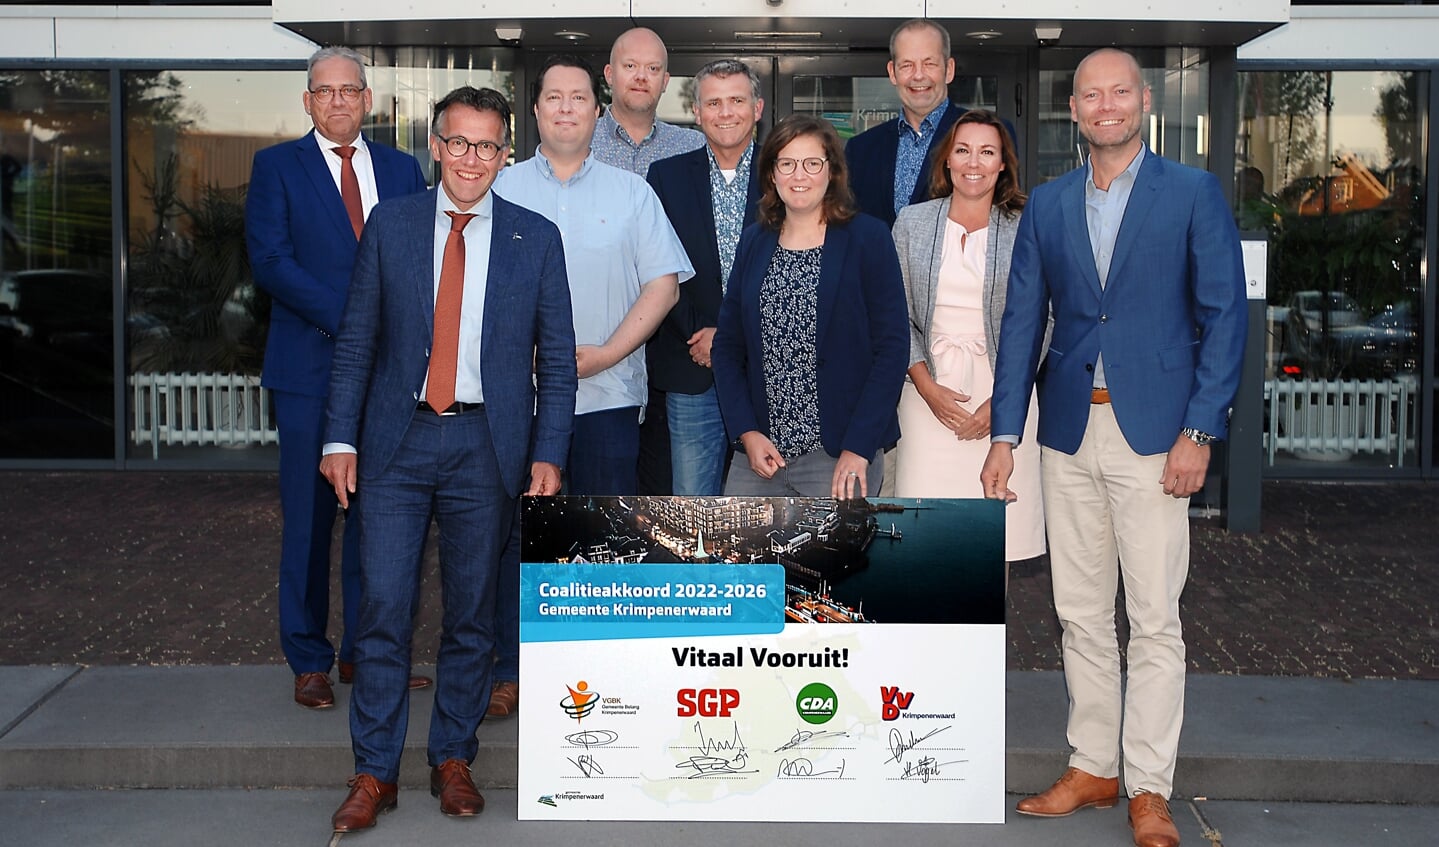 • Het coalitieakkoord Vitaal Vooruit! ondertekend. V.l.n.r. Erik Wassink (SGP), Jan Verburg (SGP), Wisja Pannekoek (VGBK), Pascal van der Hek (VGBK), Marco Advocaat (CDA), Irma Bultman (CDA), Willem Schoof (formateur), Heleen Vogel (VVD), Pascal Zuijderwijk (VVD).